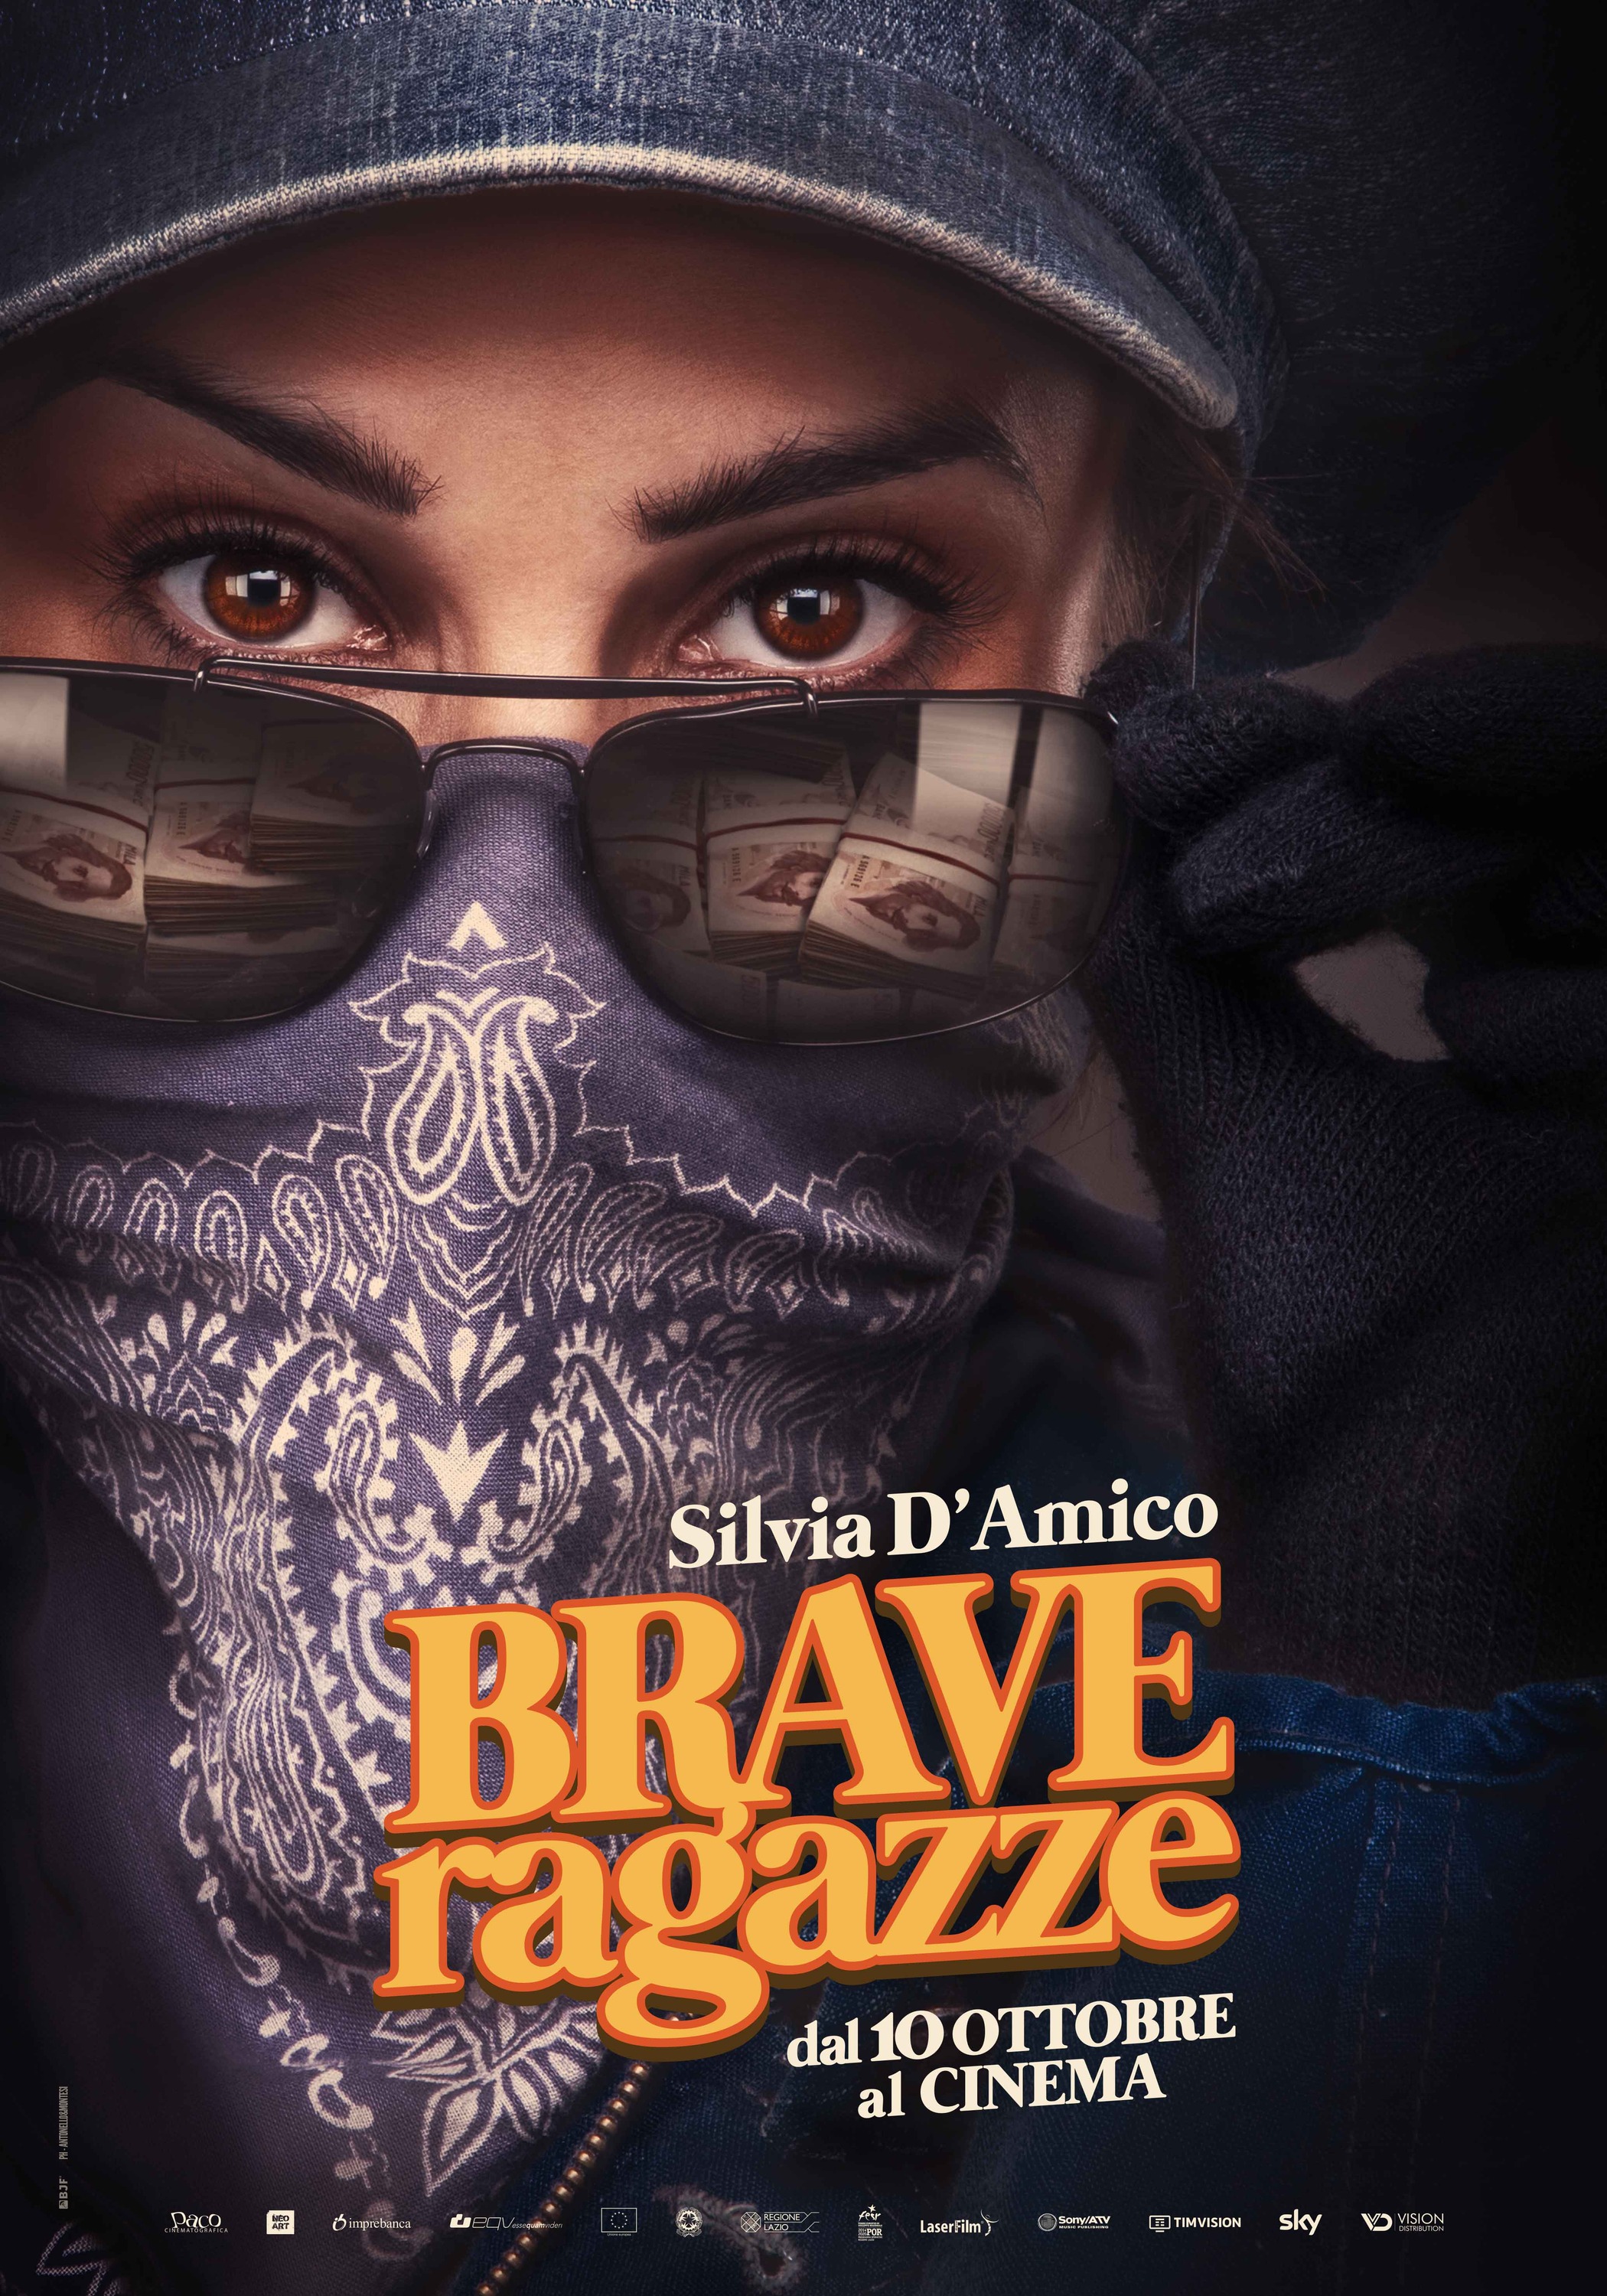 Mega Sized Movie Poster Image for Brave ragazze (#5 of 5)